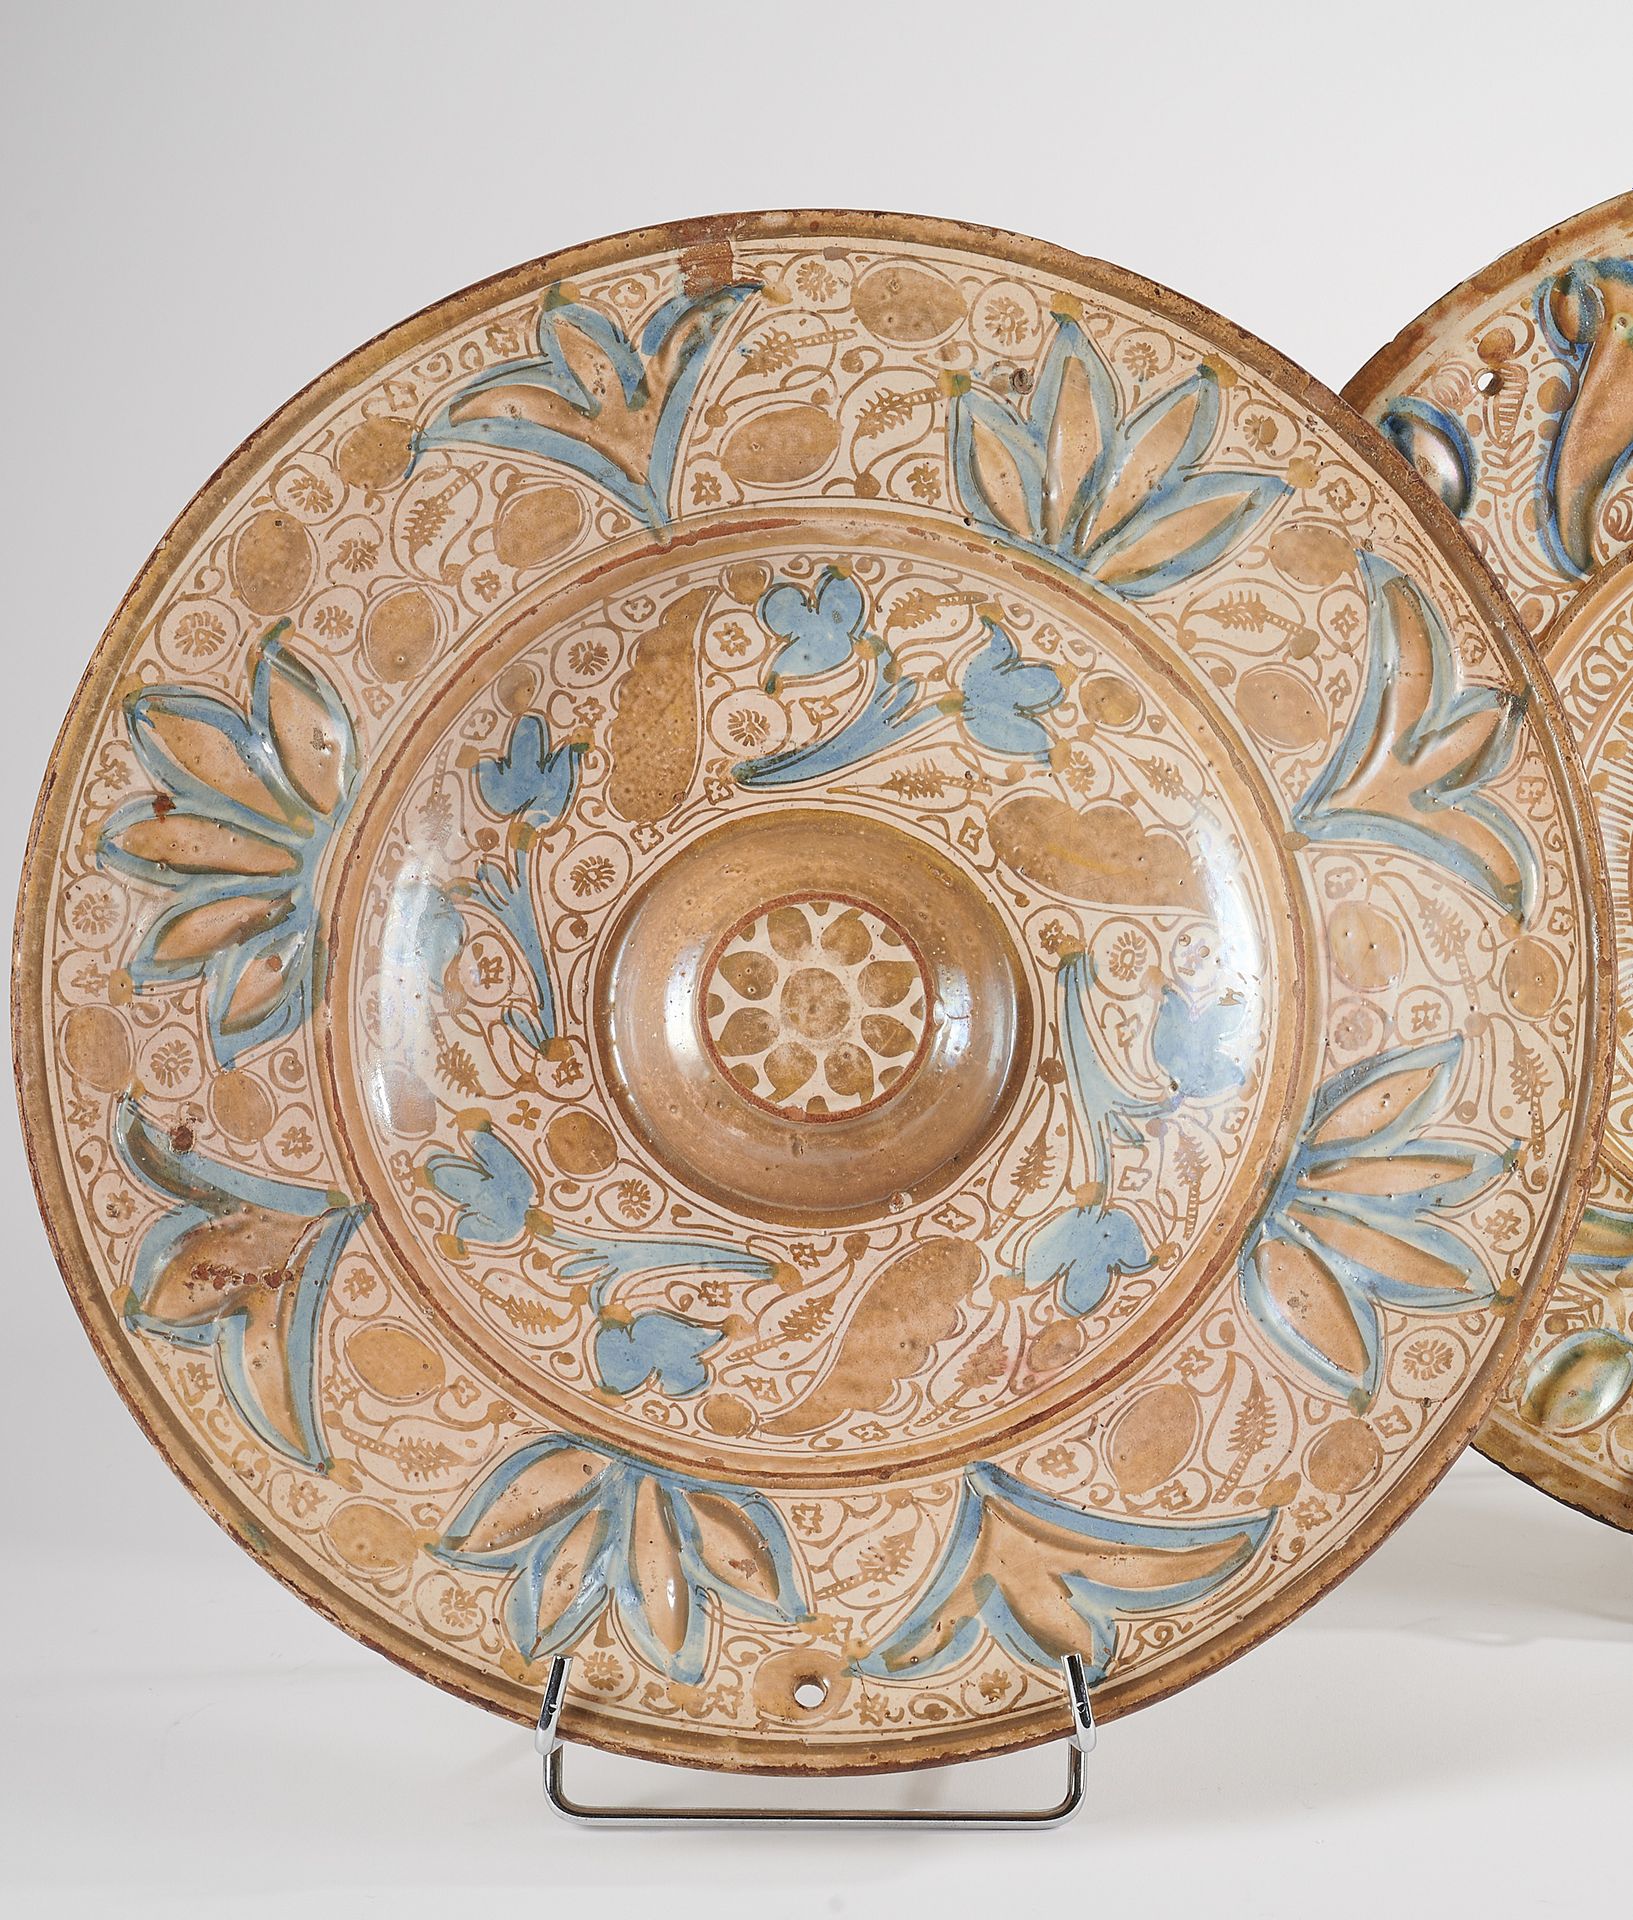 Null Manises - Siglo XVII 
Gran plato redondo de reflejo metálico con decoración&hellip;